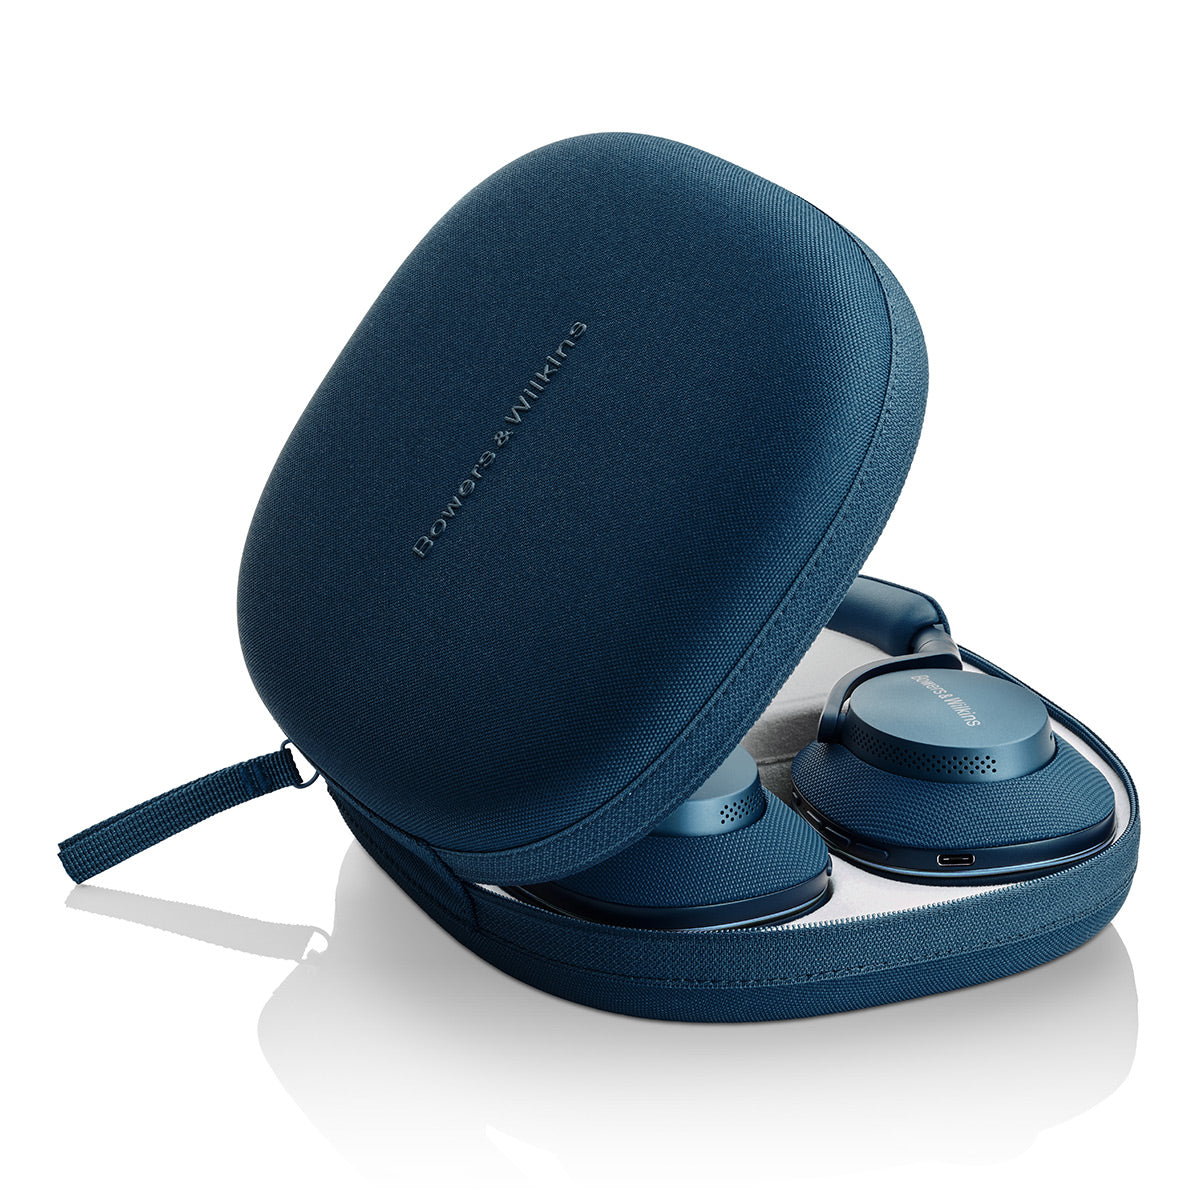 Bowers & Wilkins PX7 S2e Over-Ear Noise-Canceling Wireless Headphones - Ocean Blue